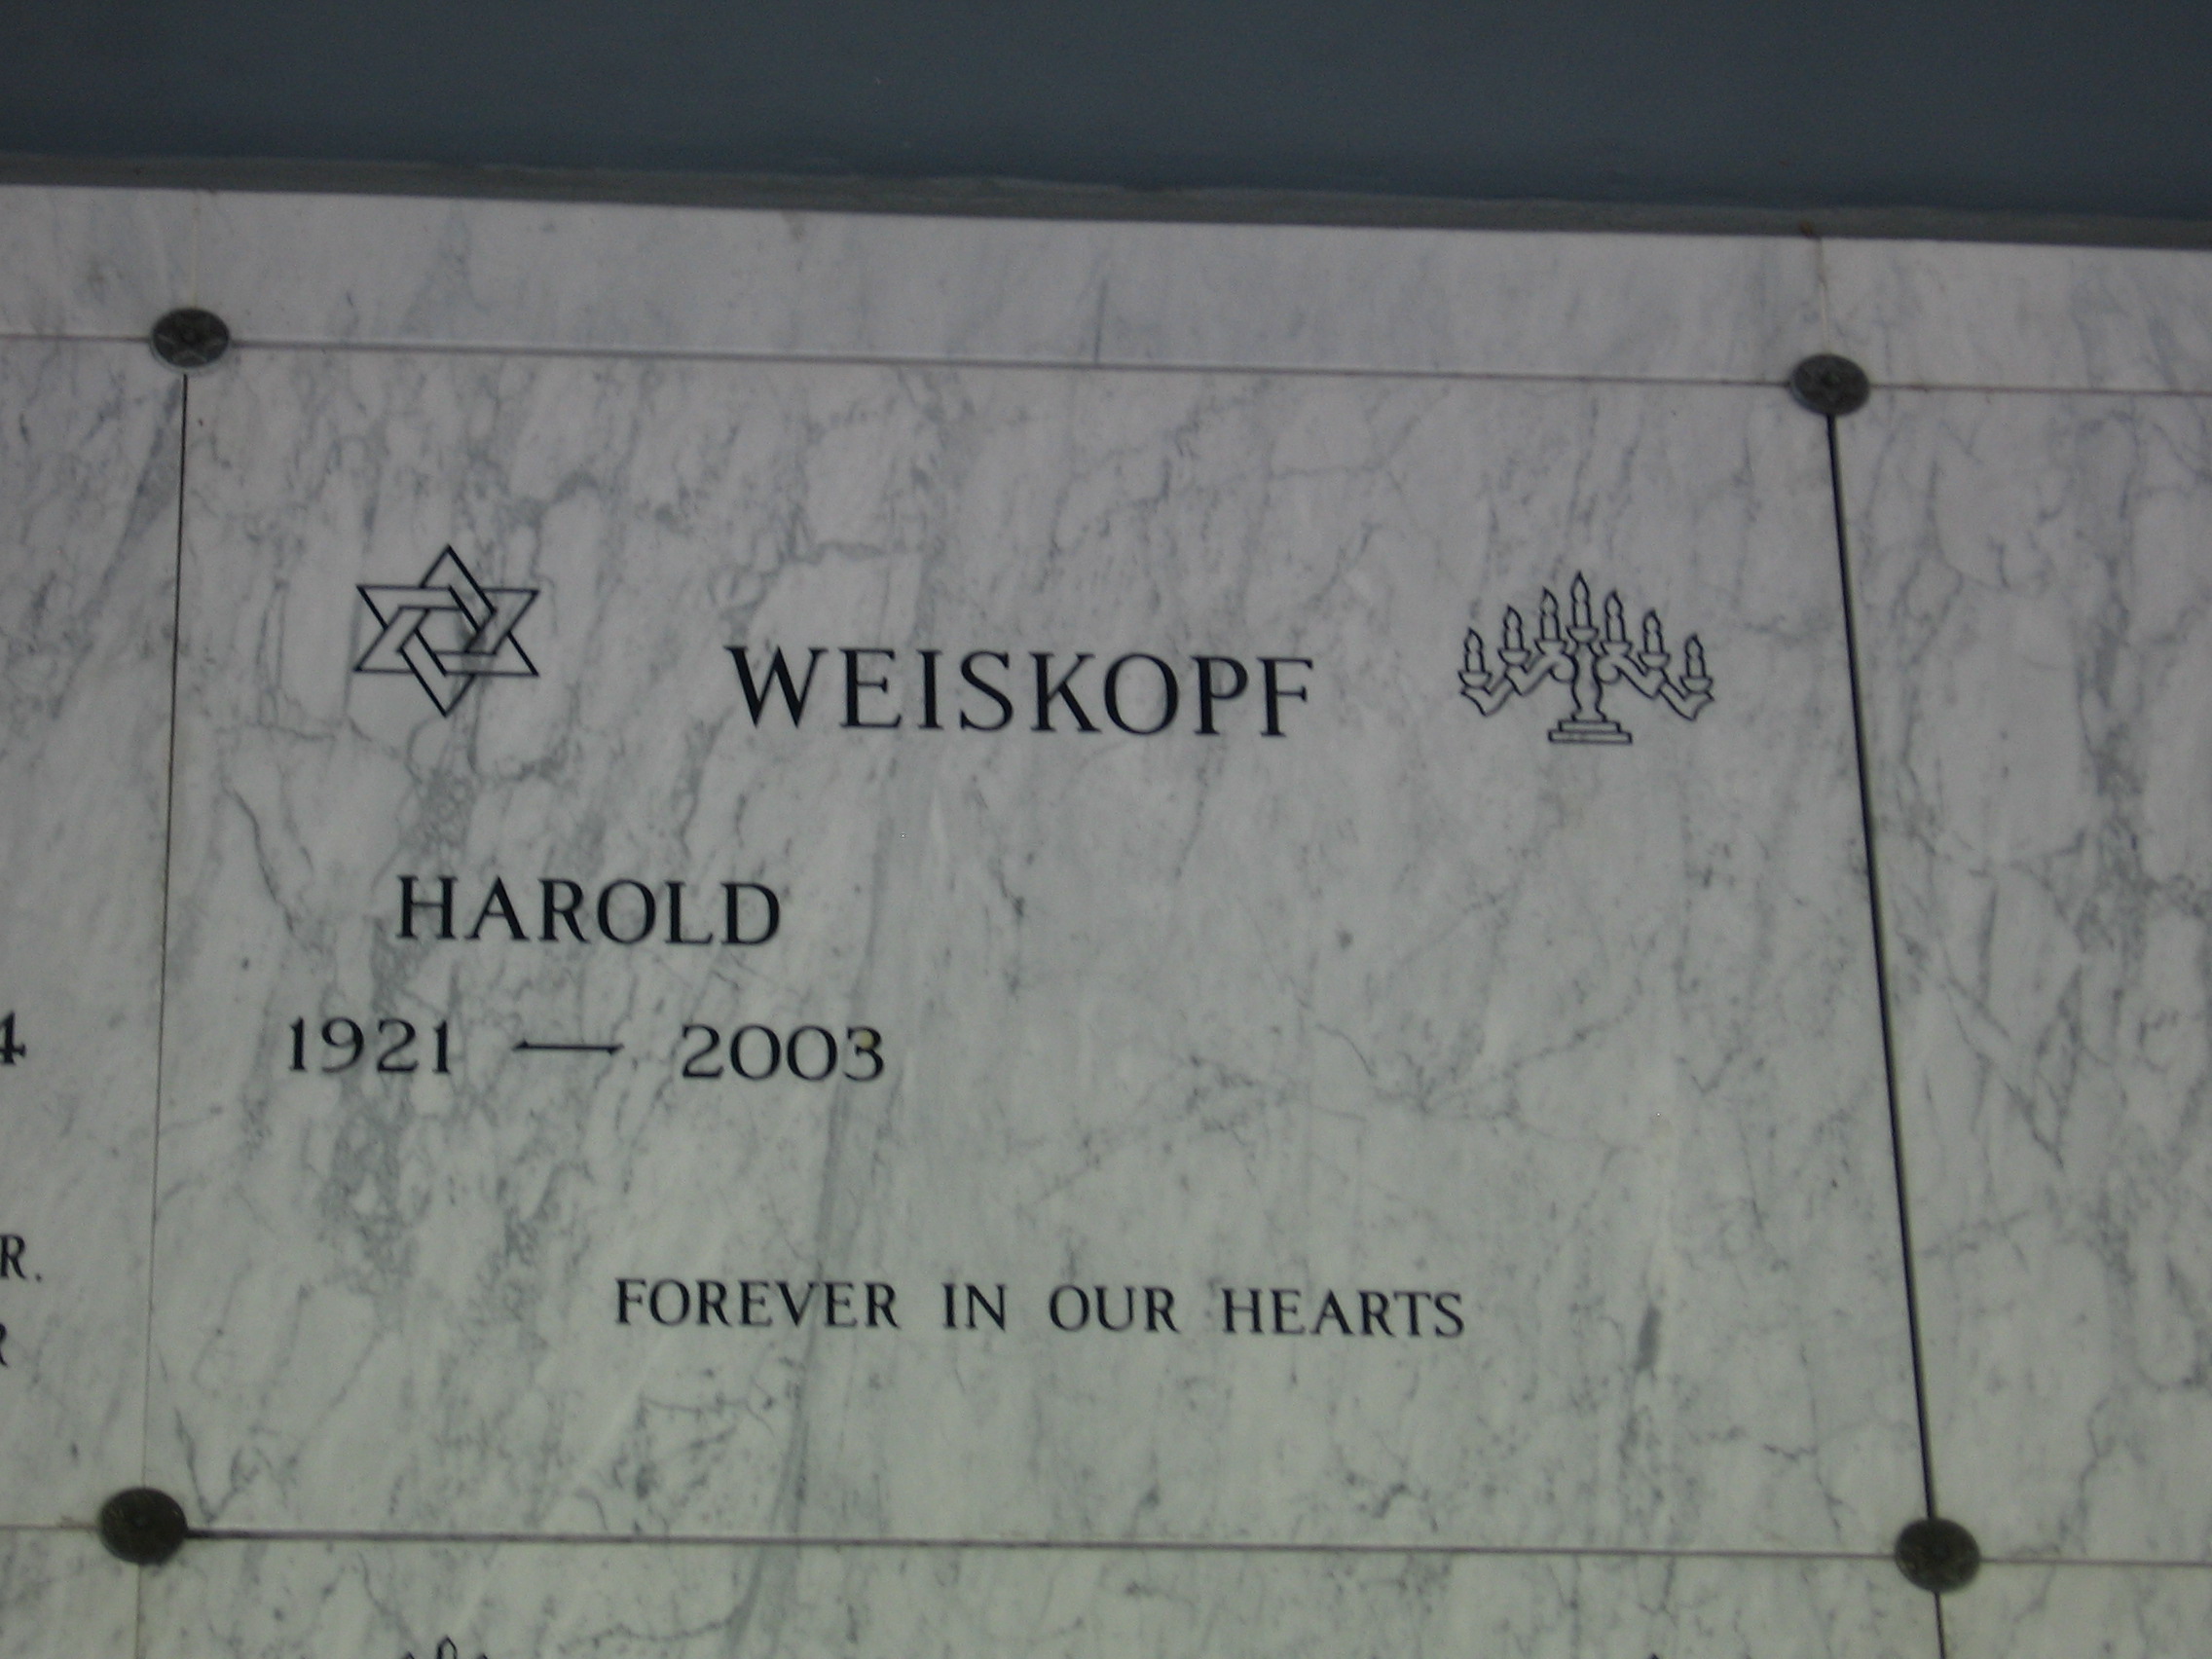 Harold Weiskopf